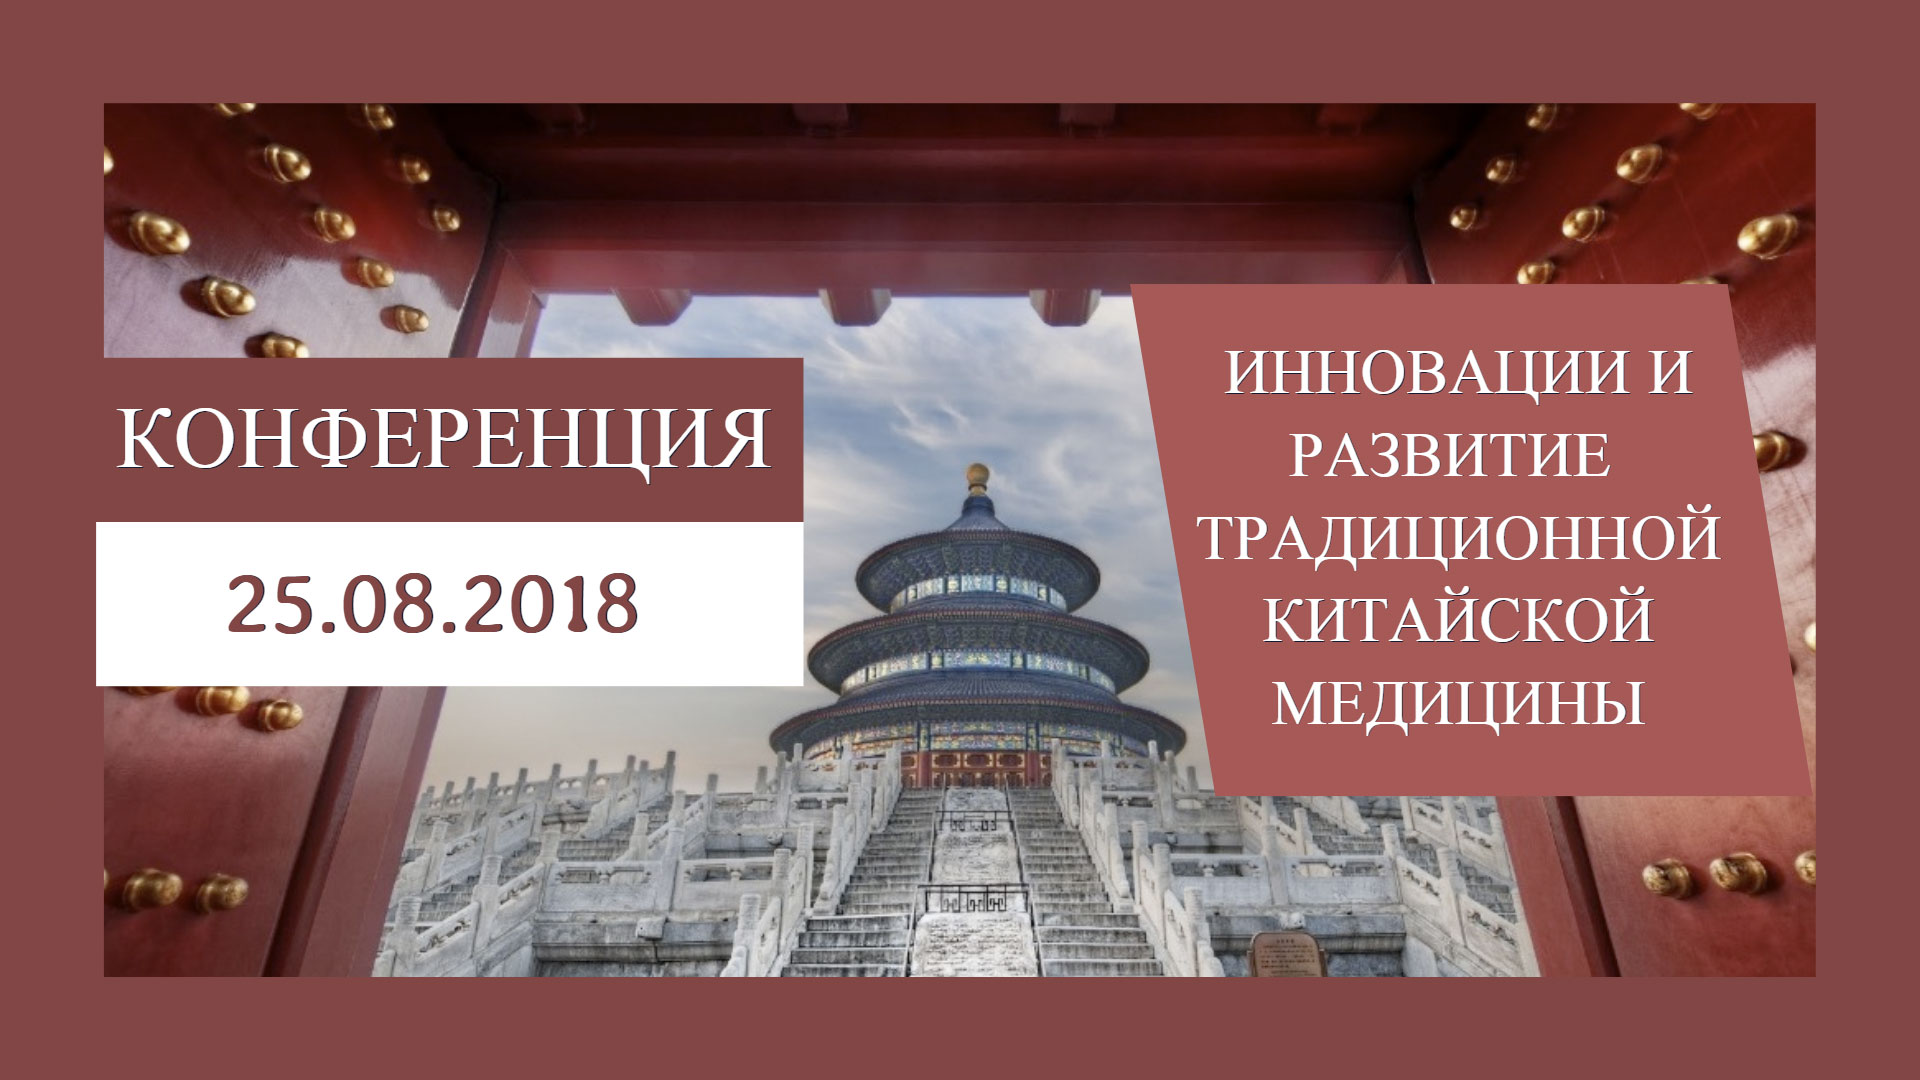 Конференция: Инновации и развитие методик и продукции традиционной китайской медицины 25.08